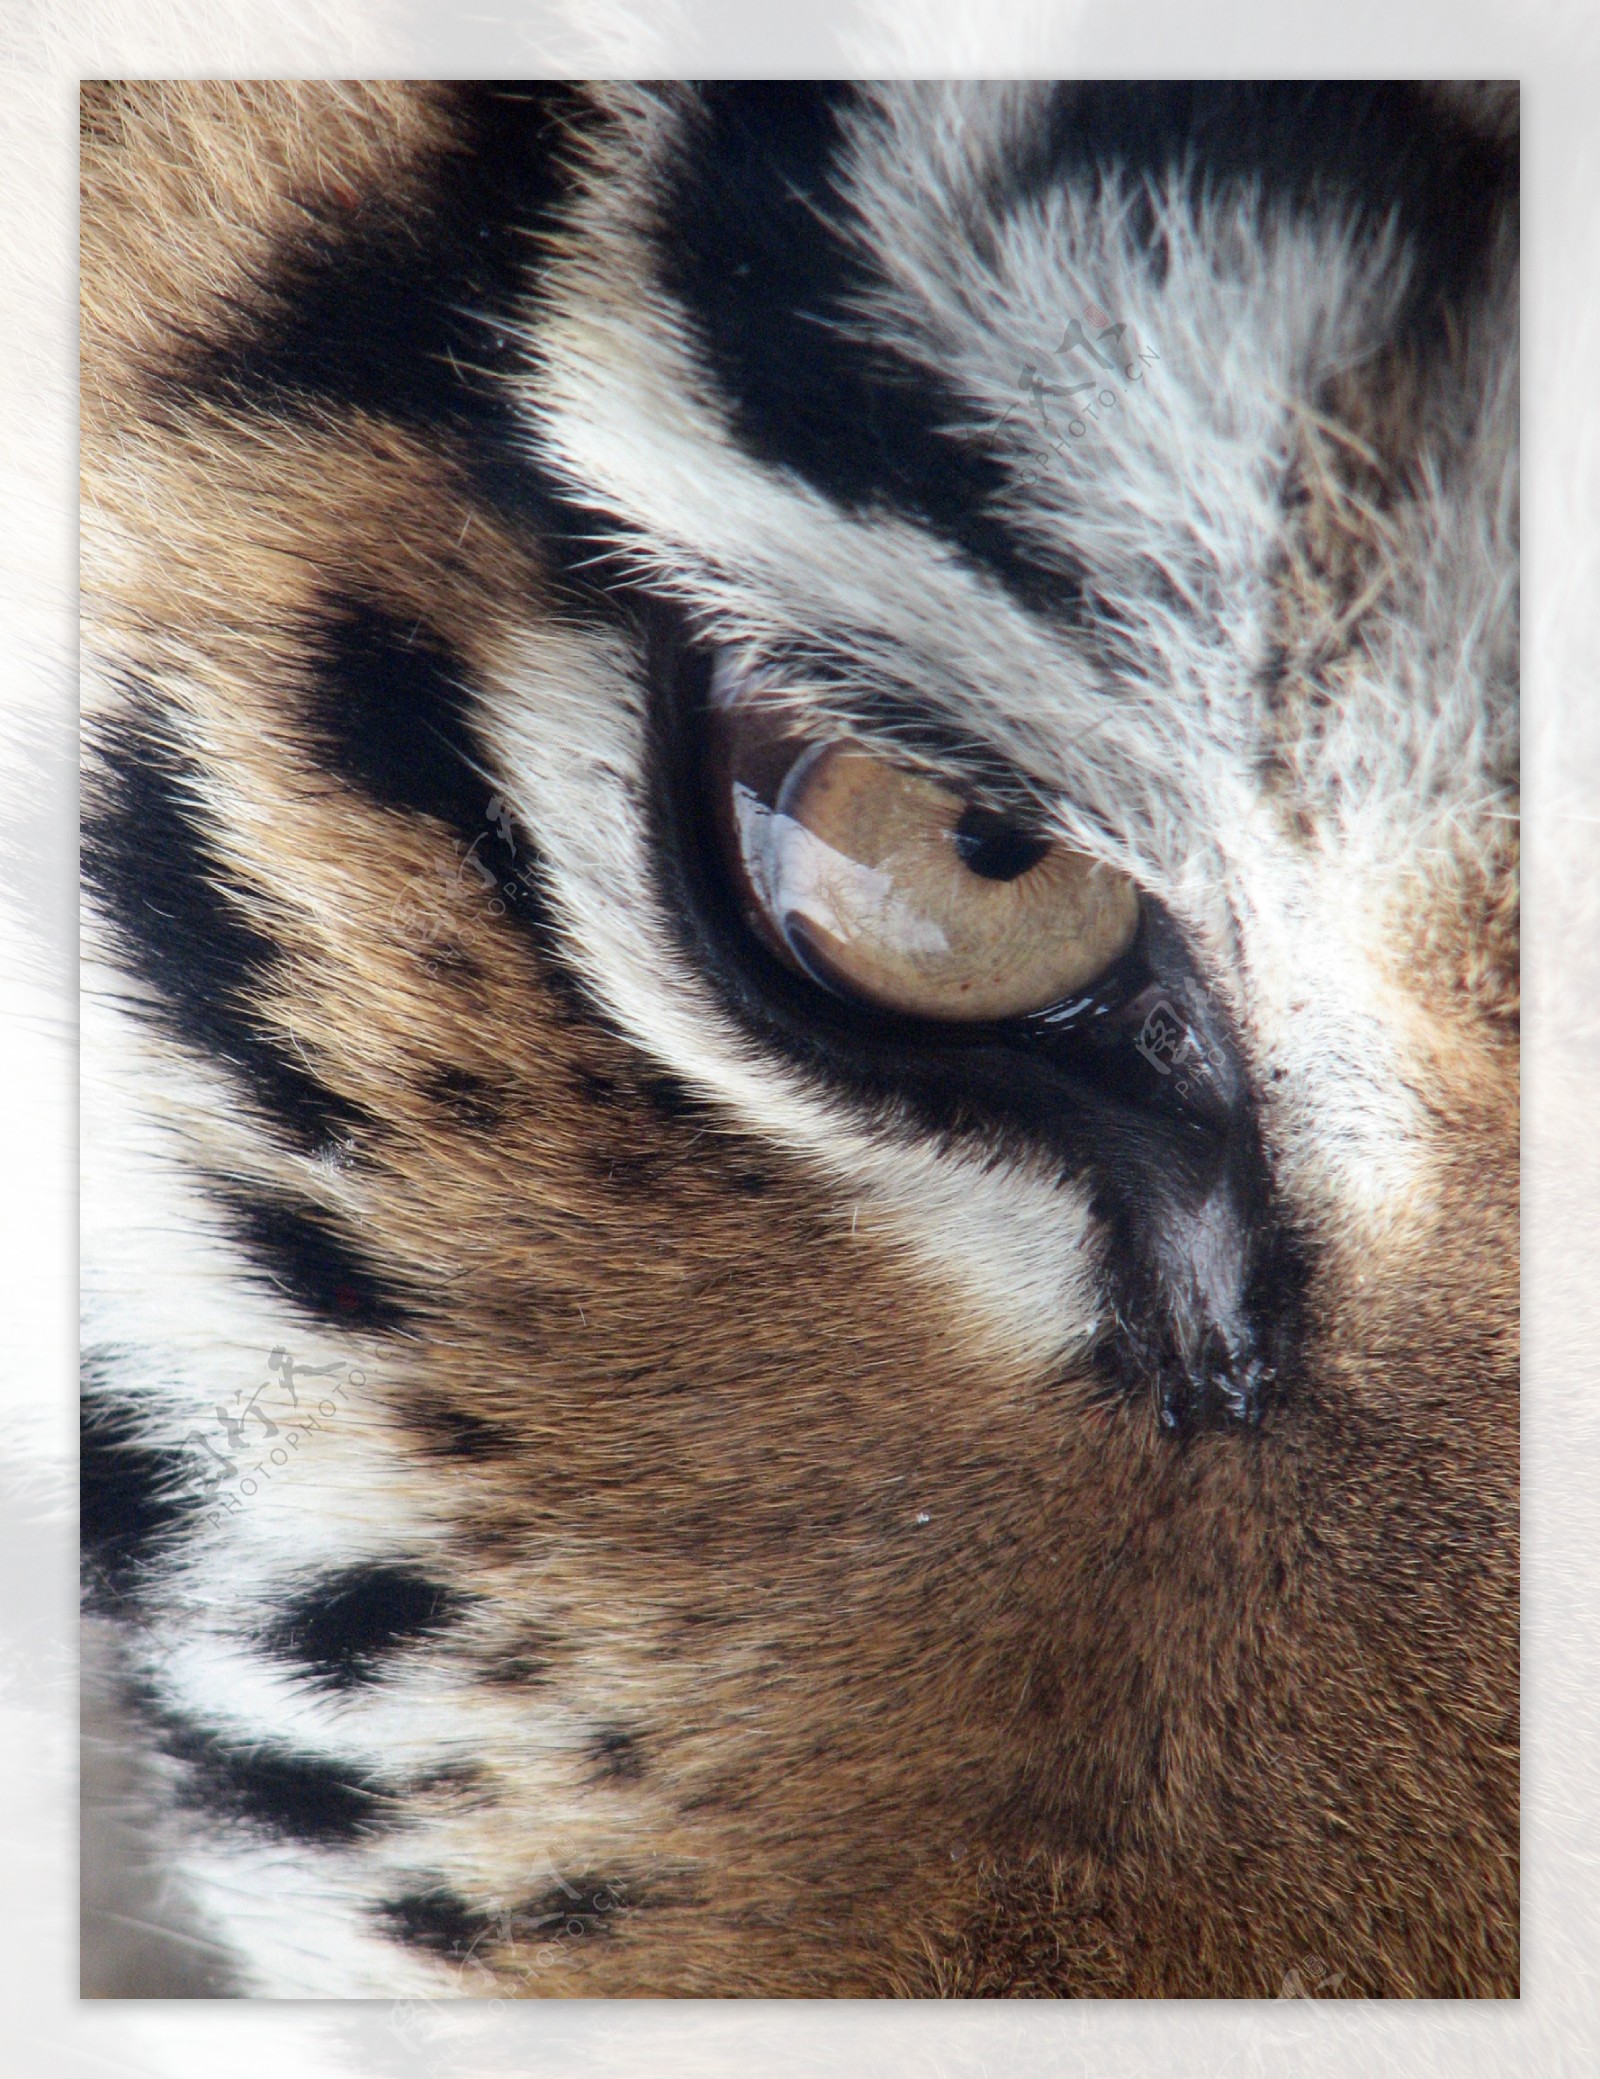 老虎眼睛图片